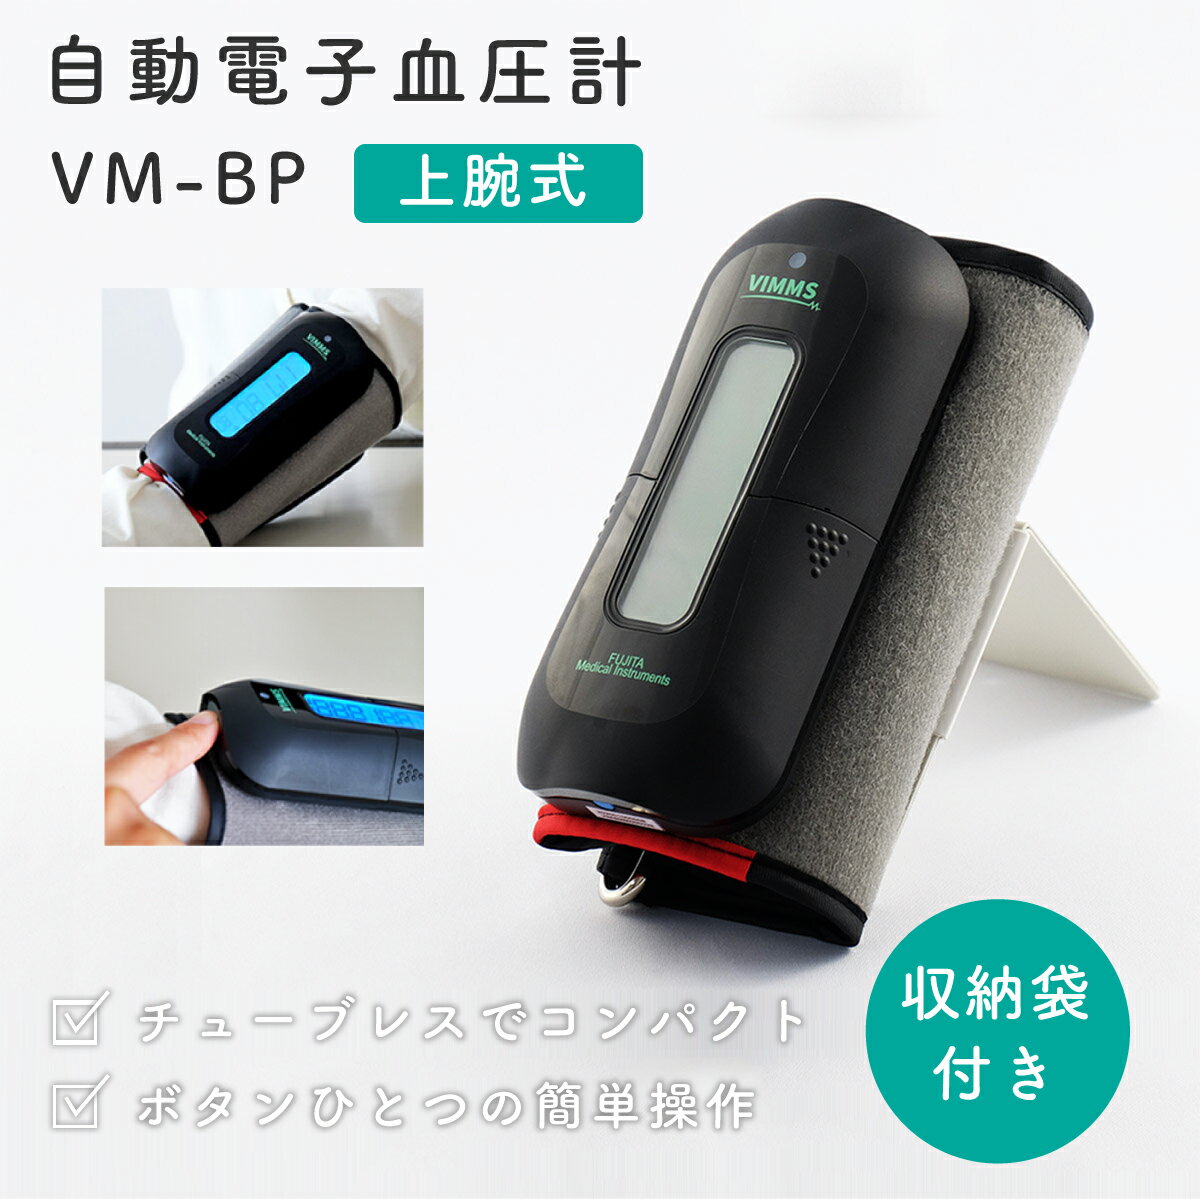 【ふるさと納税】 自動電子血圧計 VM-BP【医療機器認証取